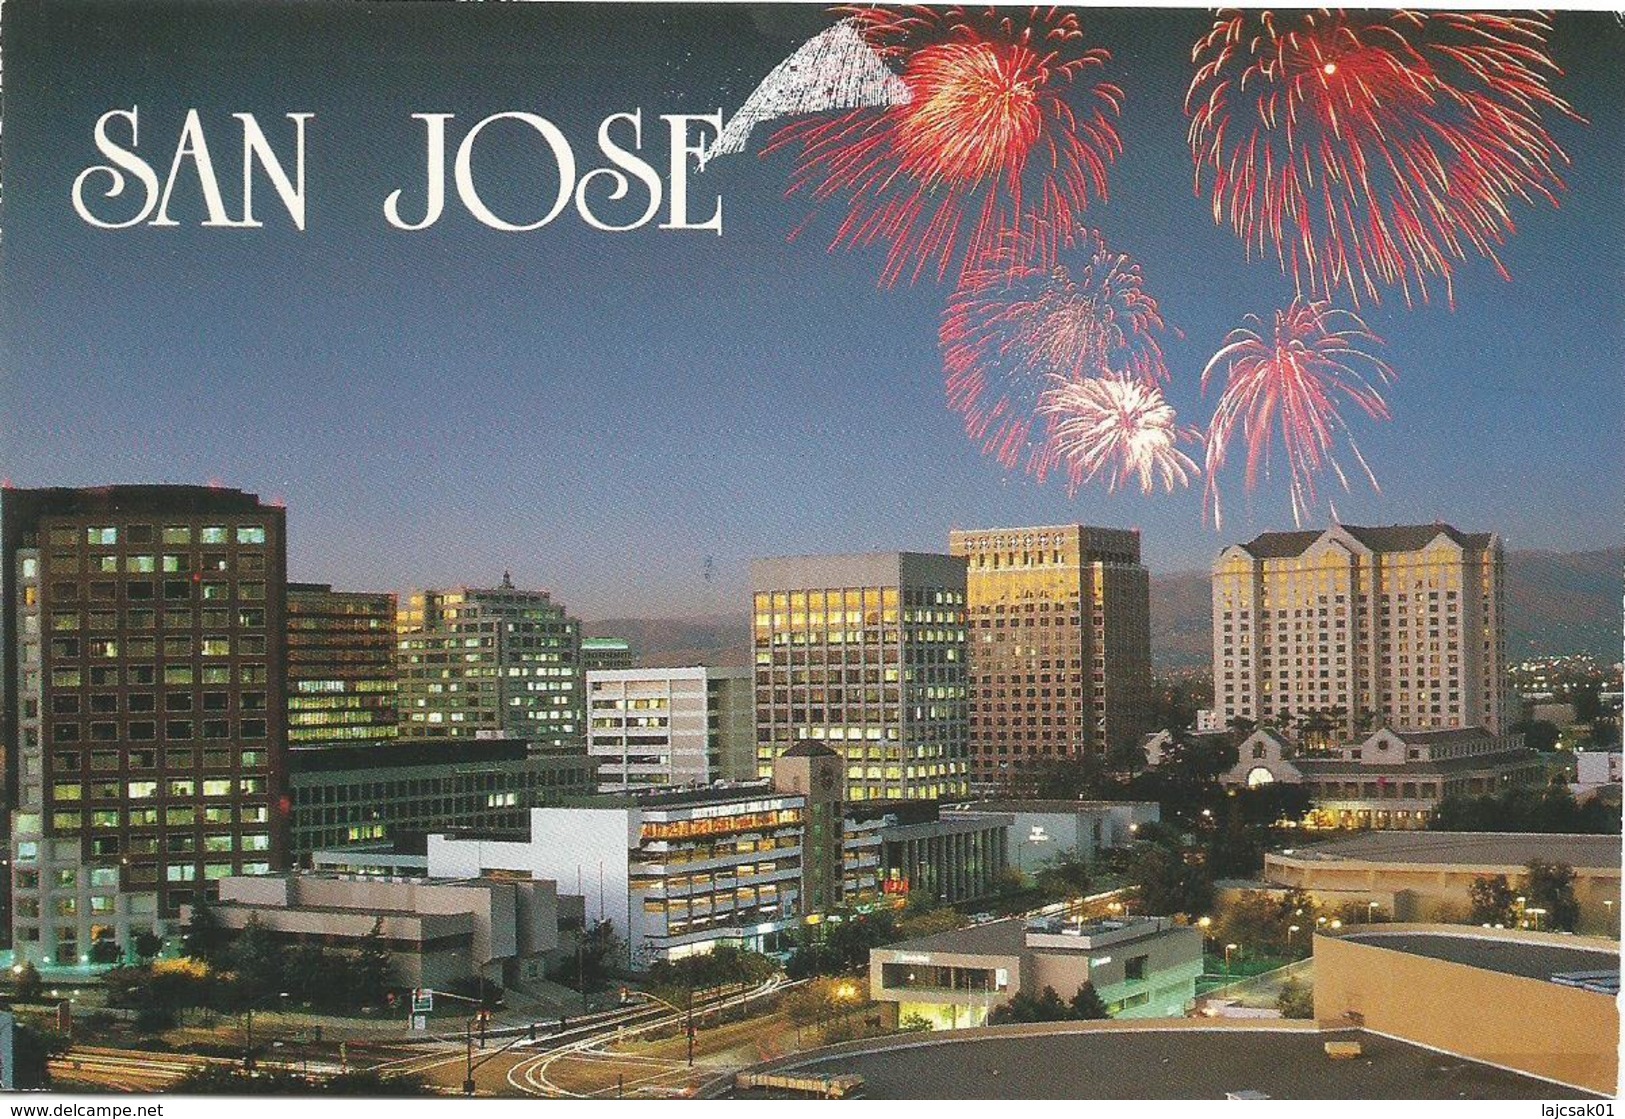 San Jose - San Jose